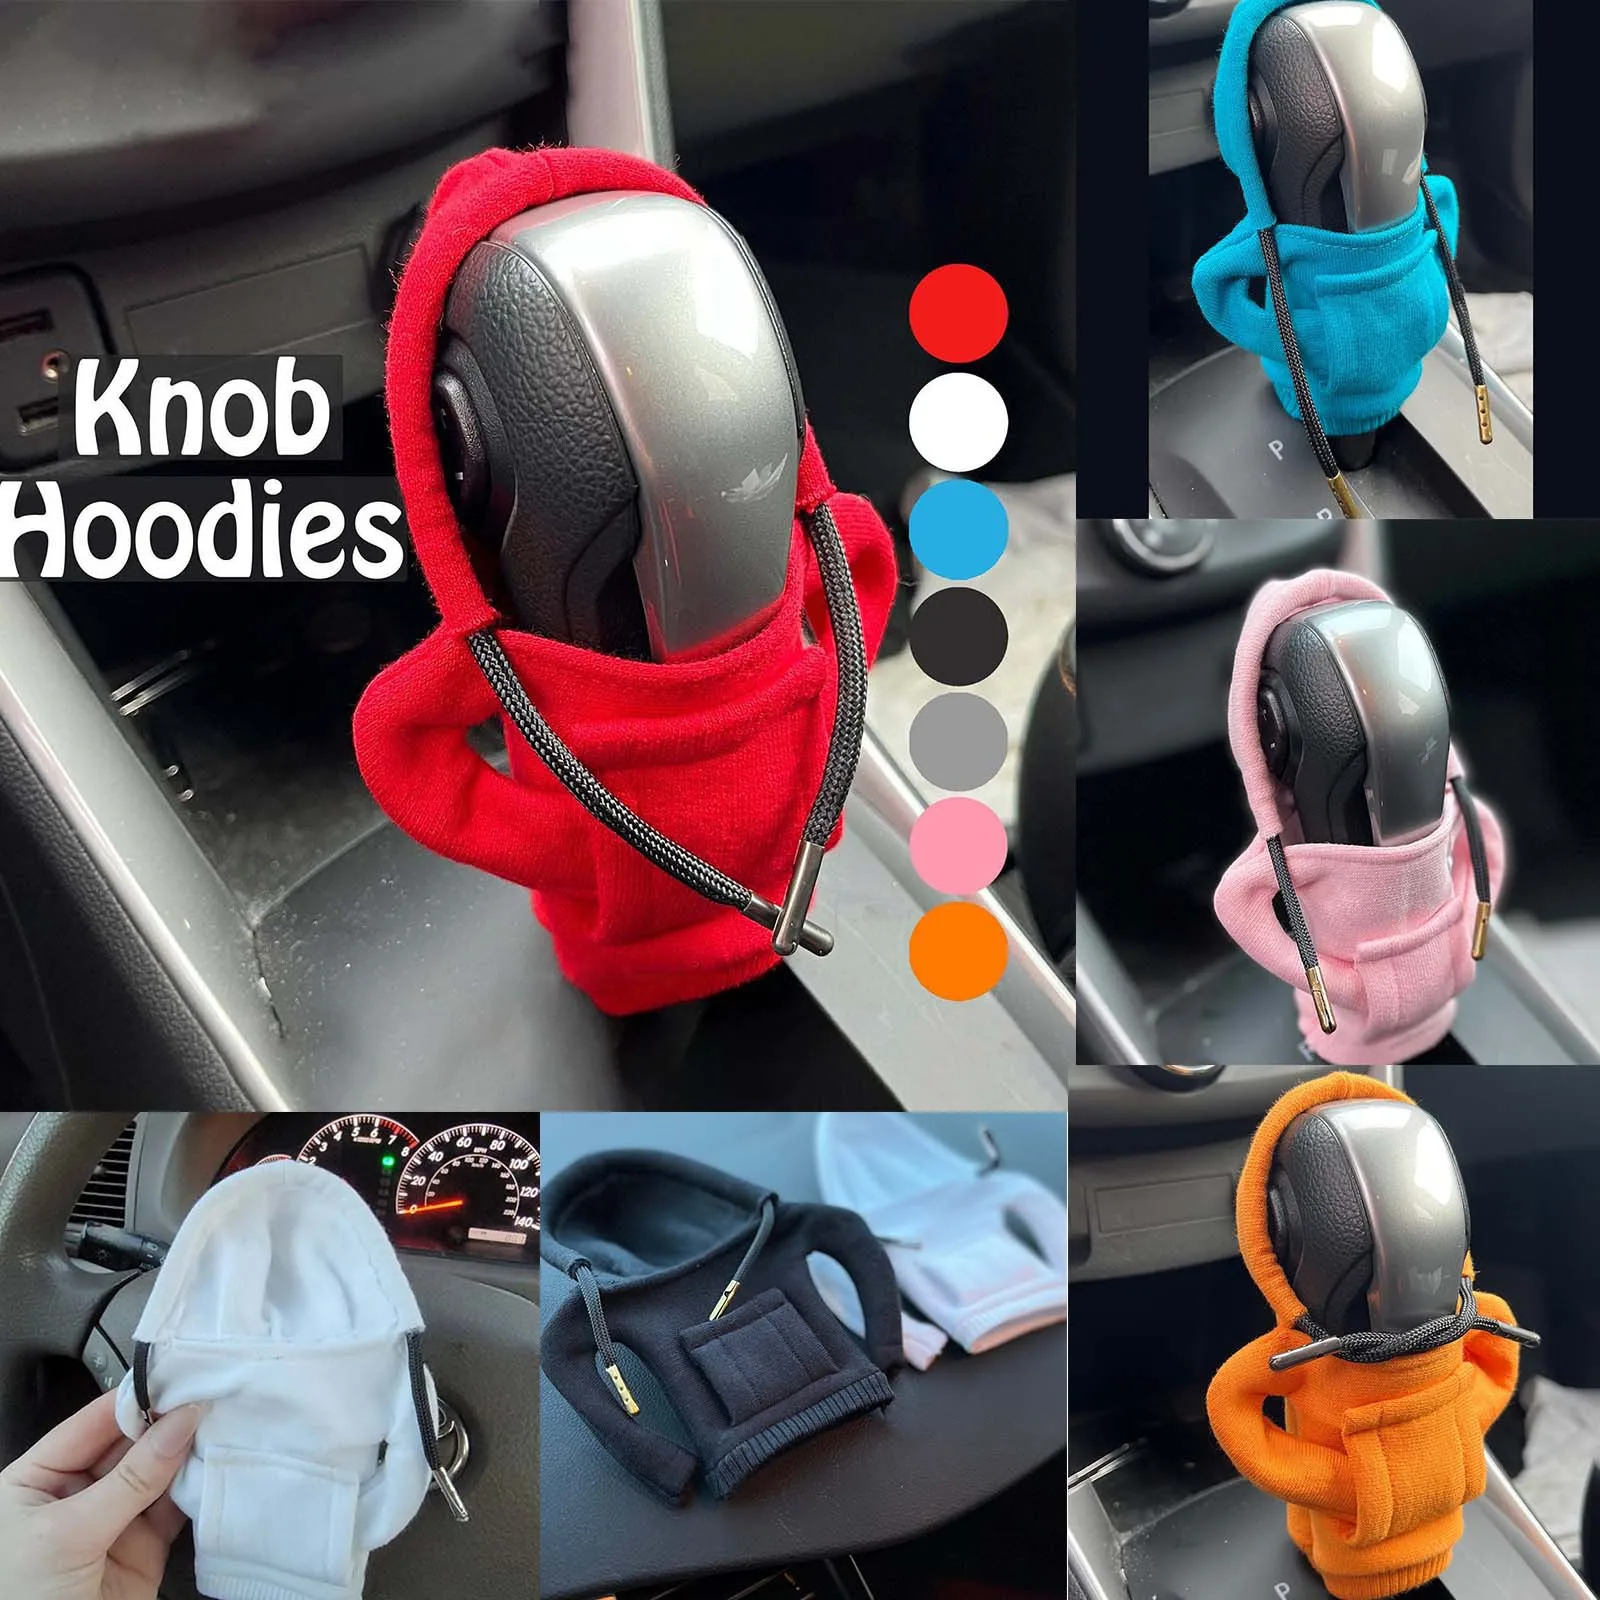 6 farben sind optional flauschige cartoon hoodie auto schalthebel mit  kapuze abdeckung schalthebel kleidung abdeckung auto ornamente auto  geschenk